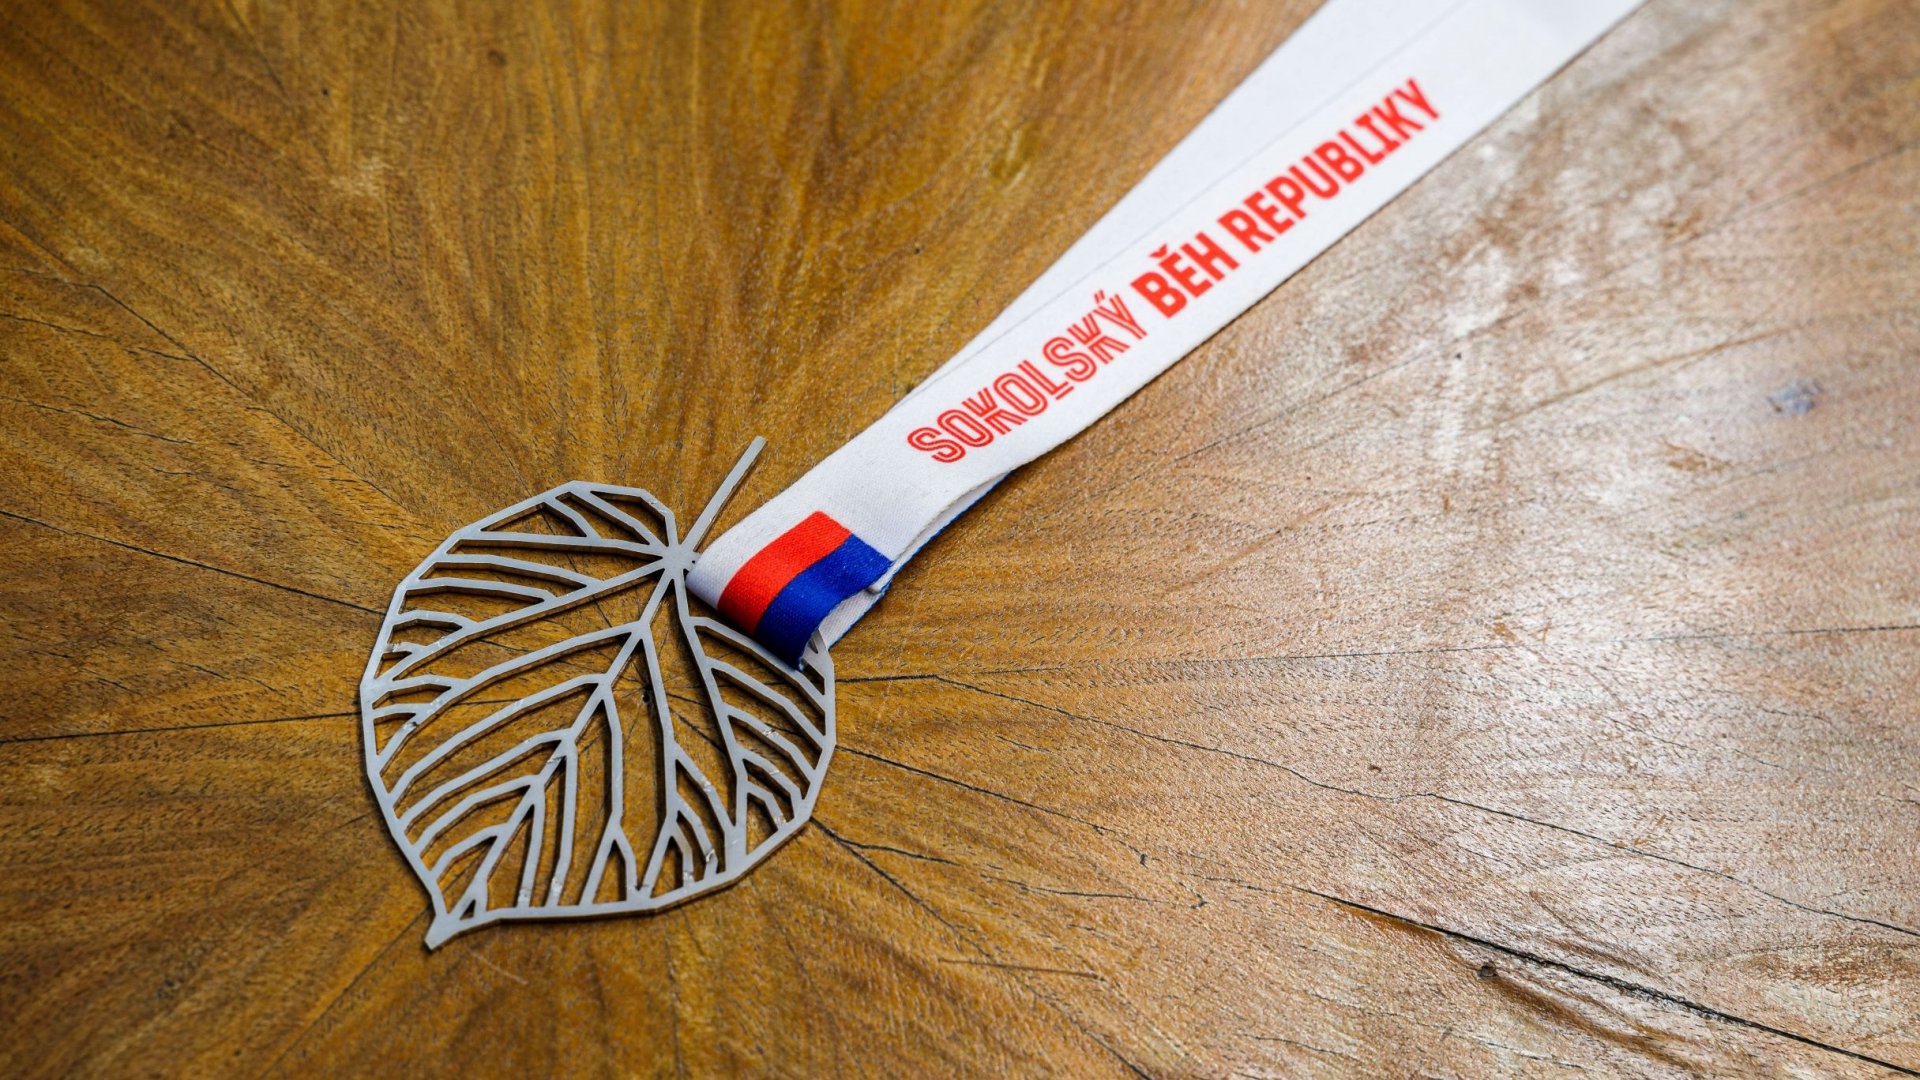 Krása a univerzalita v jednom. Účastníci Sokolského běhu republiky získají originální medaili navrženou Jakubem Flejšarem